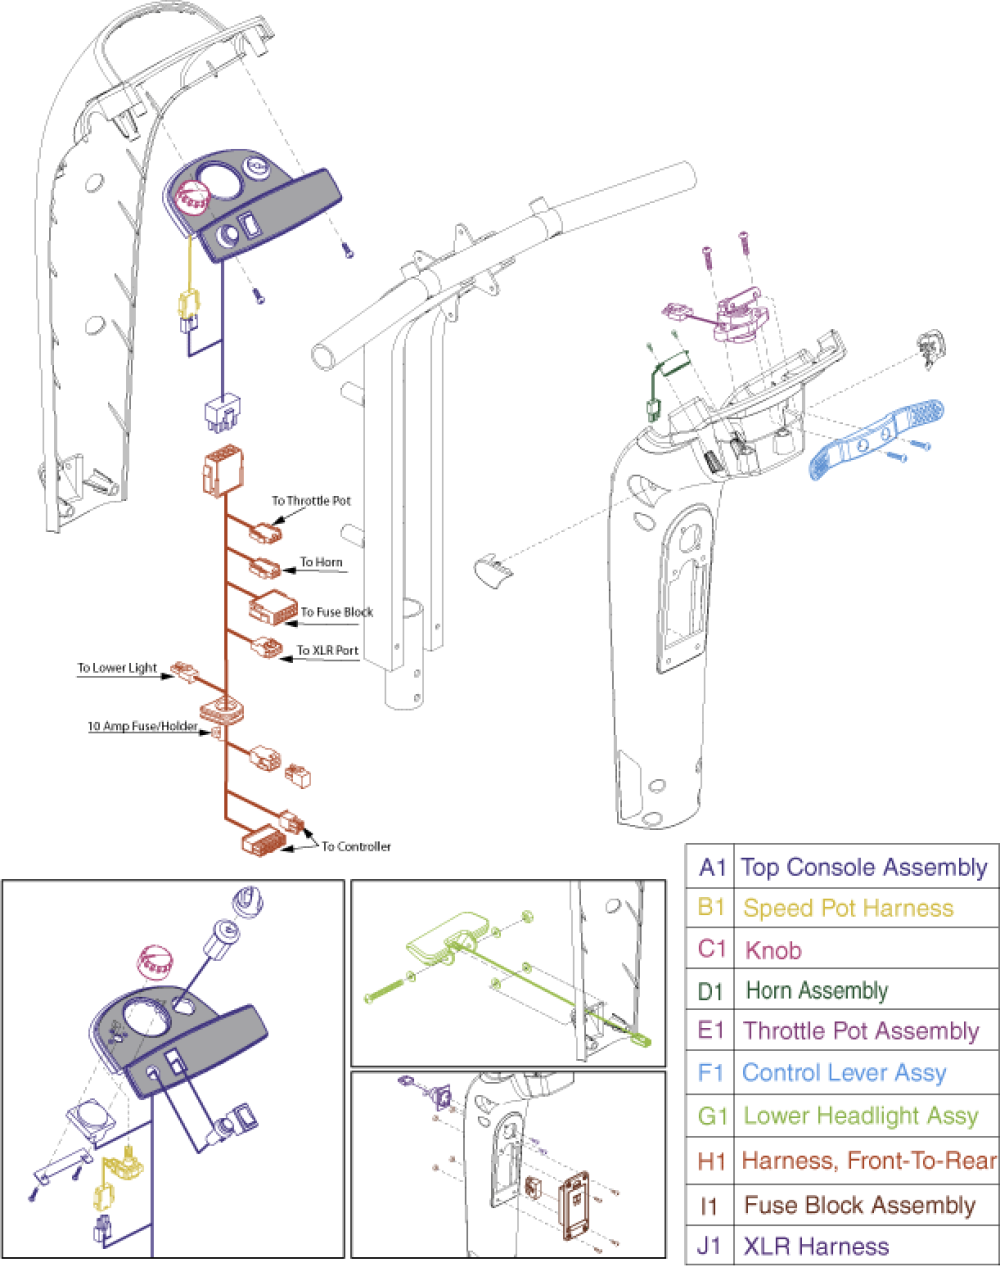 Electronics Assembly - Es9 Console parts diagram